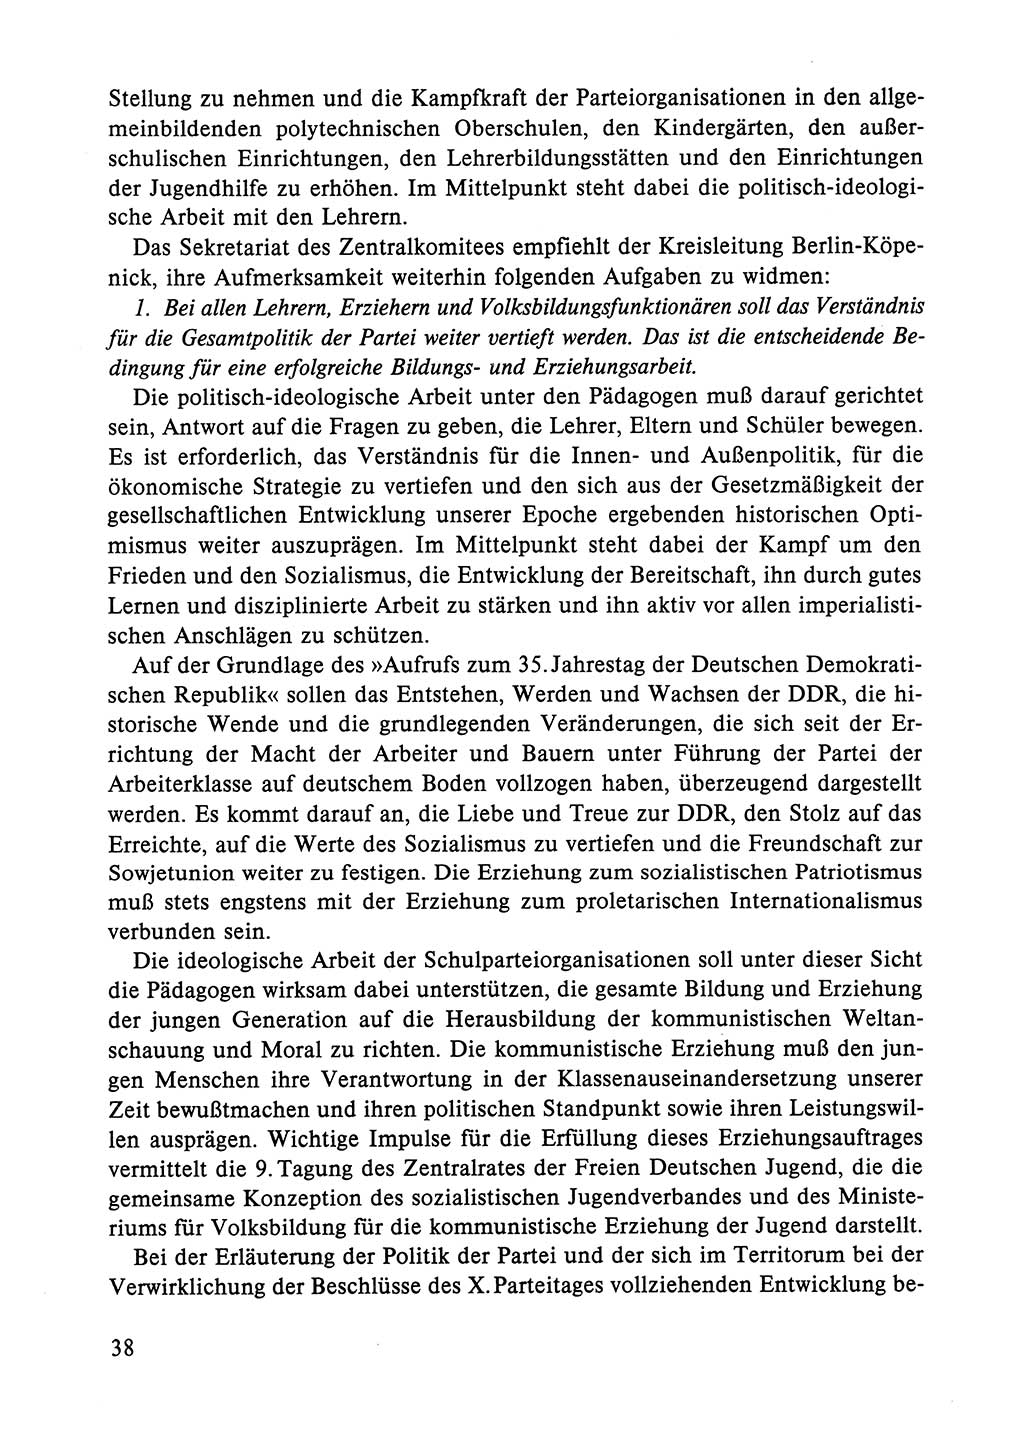 Dokumente der Sozialistischen Einheitspartei Deutschlands (SED) [Deutsche Demokratische Republik (DDR)] 1984-1985, Seite 38 (Dok. SED DDR 1984-1985, S. 38)